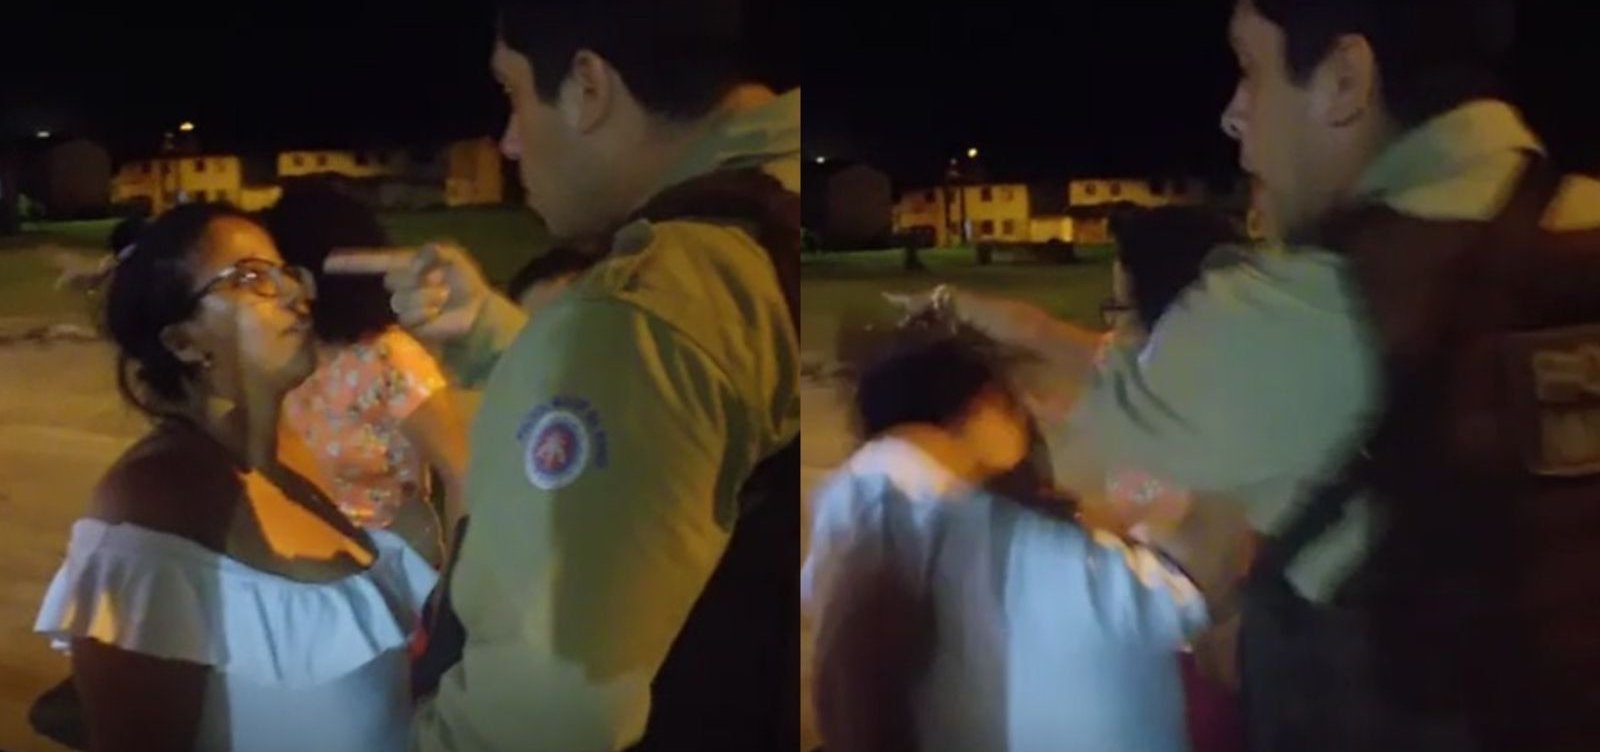 Policial que deu tapa em mulher é denunciado por agressão em Porto Seguro